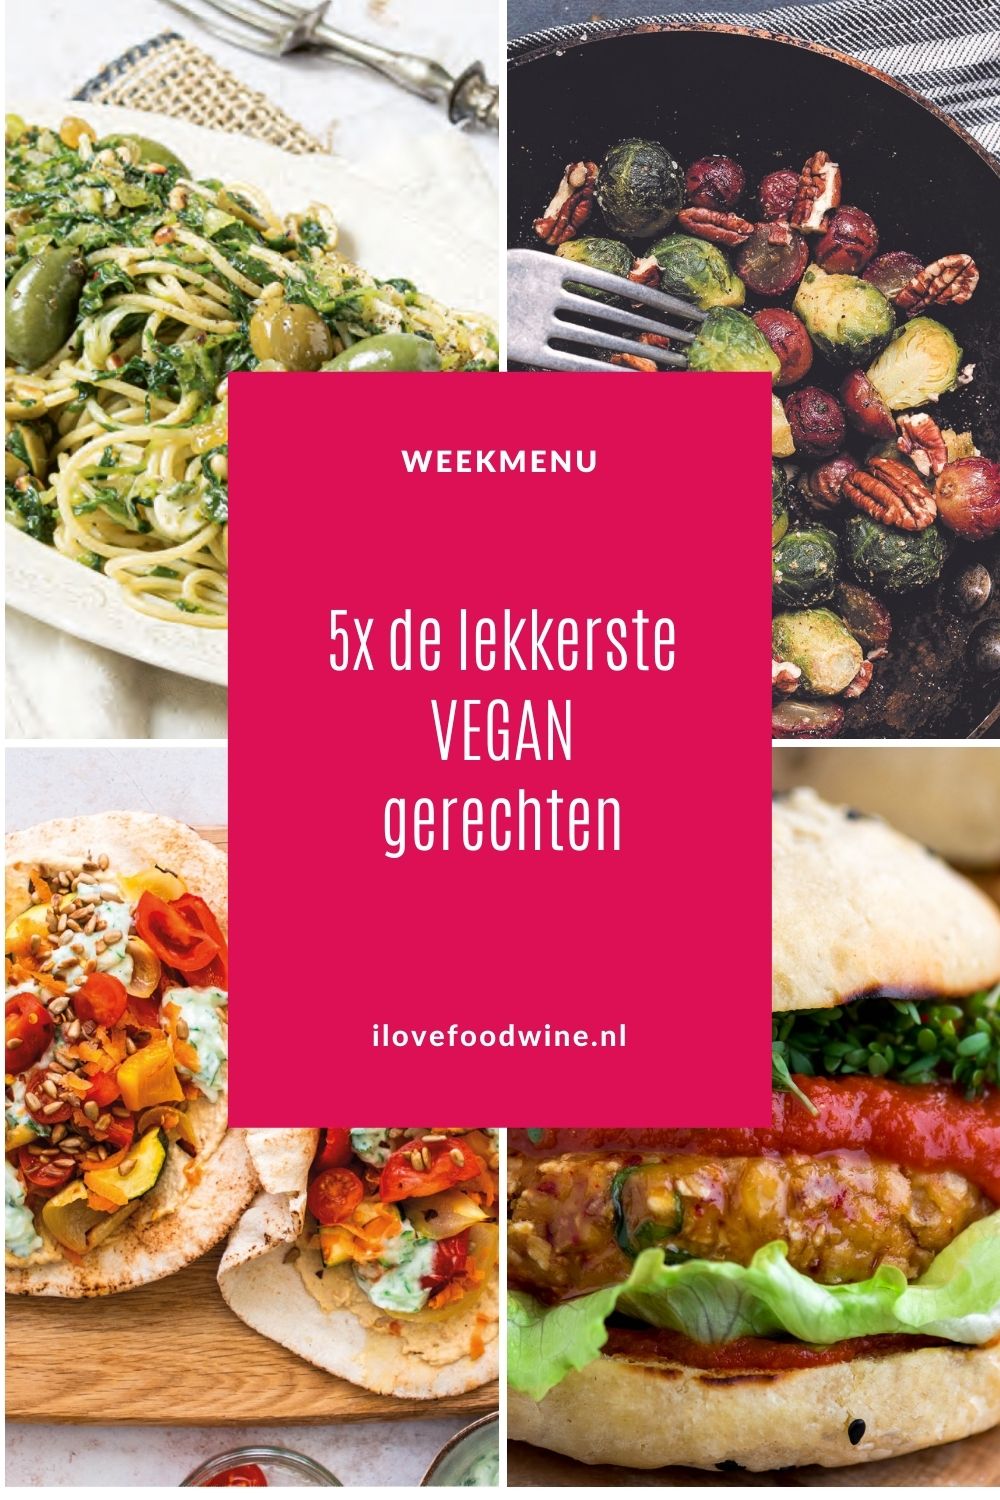 5 favoriete vegan recepten van I Love Food & Wine. Uitgezocht voor het weekmenu voor de Nationale Week zonder Vlees 2022, waarin dit jaar ook zuivel in de ban is gezet. Vegetarisch koken is leuk, lekker en gemakkelijk, maar vegan koken ook. Dus deze week Lekker Plantaardig koken, want dat is gezond en easy. Bovendien verrukkelijk, zoals deze recepten illustreren. #vegetarisch #weekmenu #weekzondervlees #vegan #doordeweeks #isabelboerdam